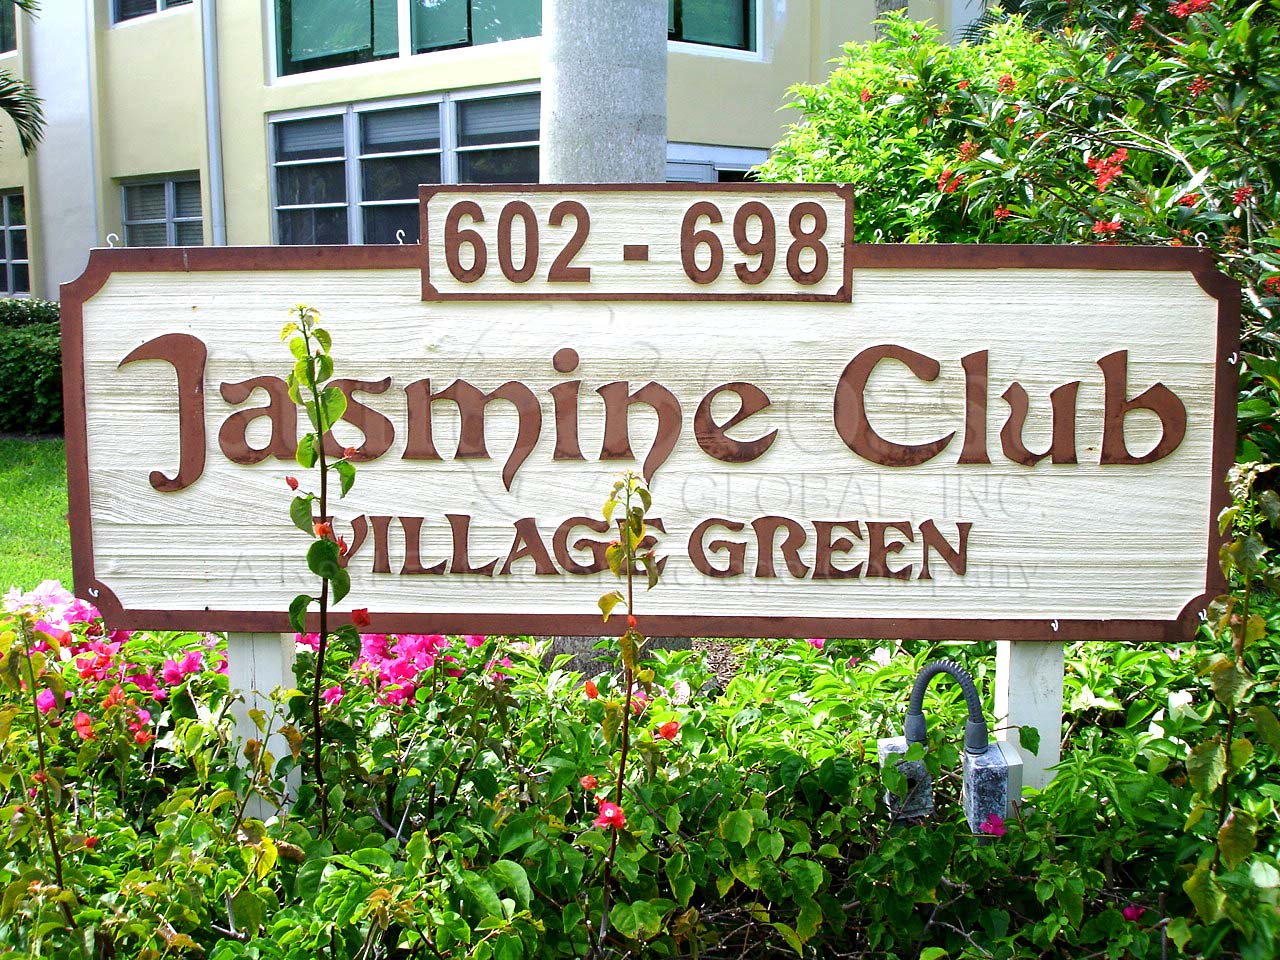 Jasmine Club Signage